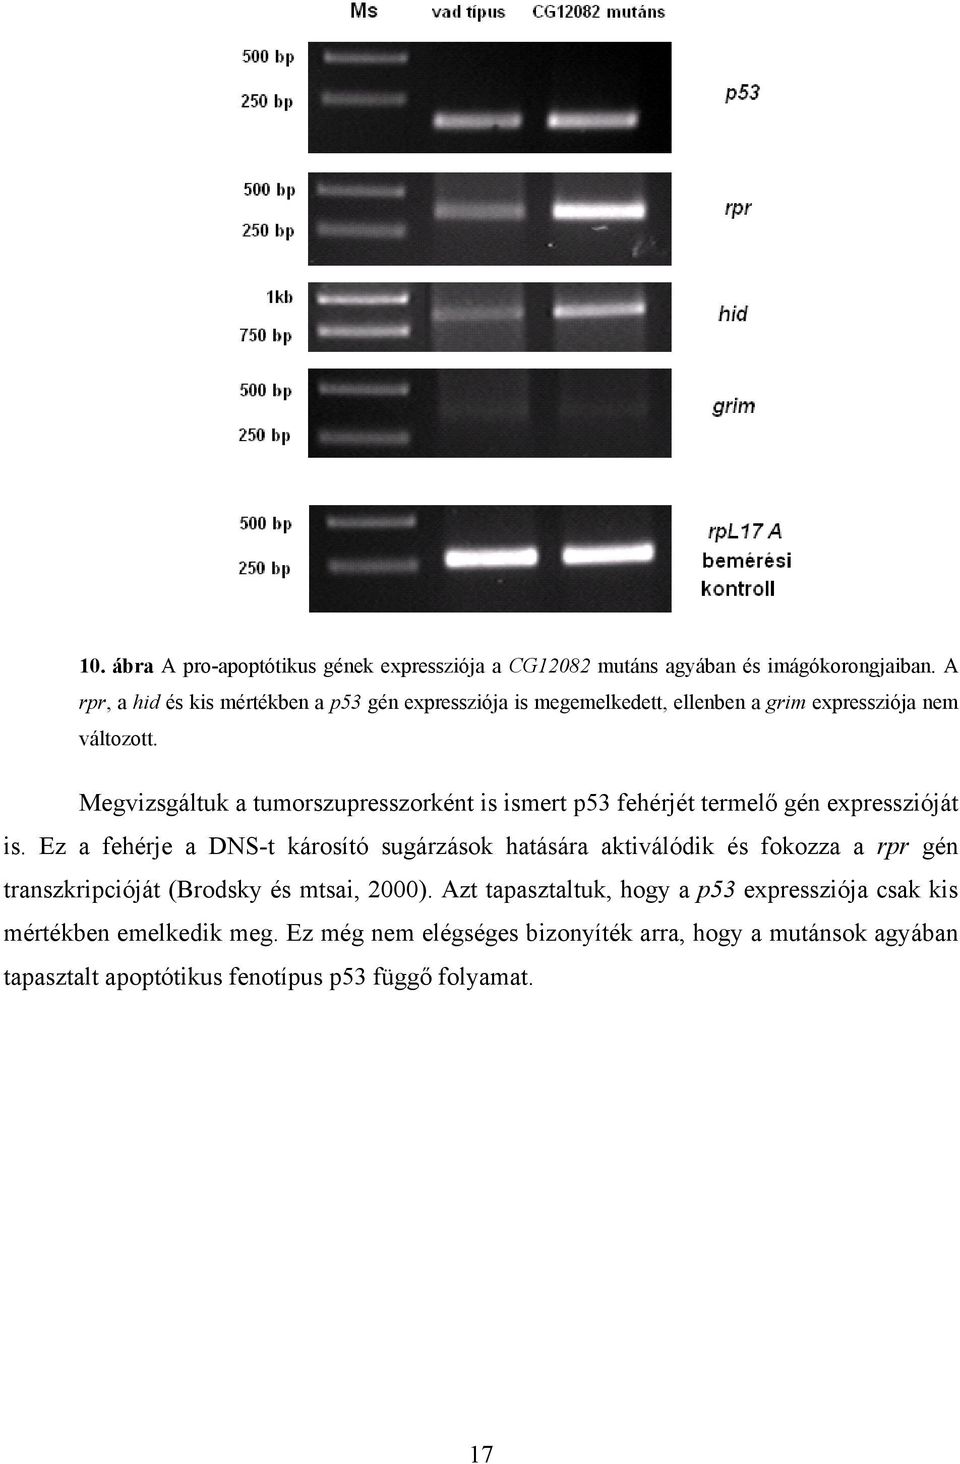 Megvizsgáltuk a tumorszupresszorként is ismert p53 fehérjét termelő gén expresszióját is.